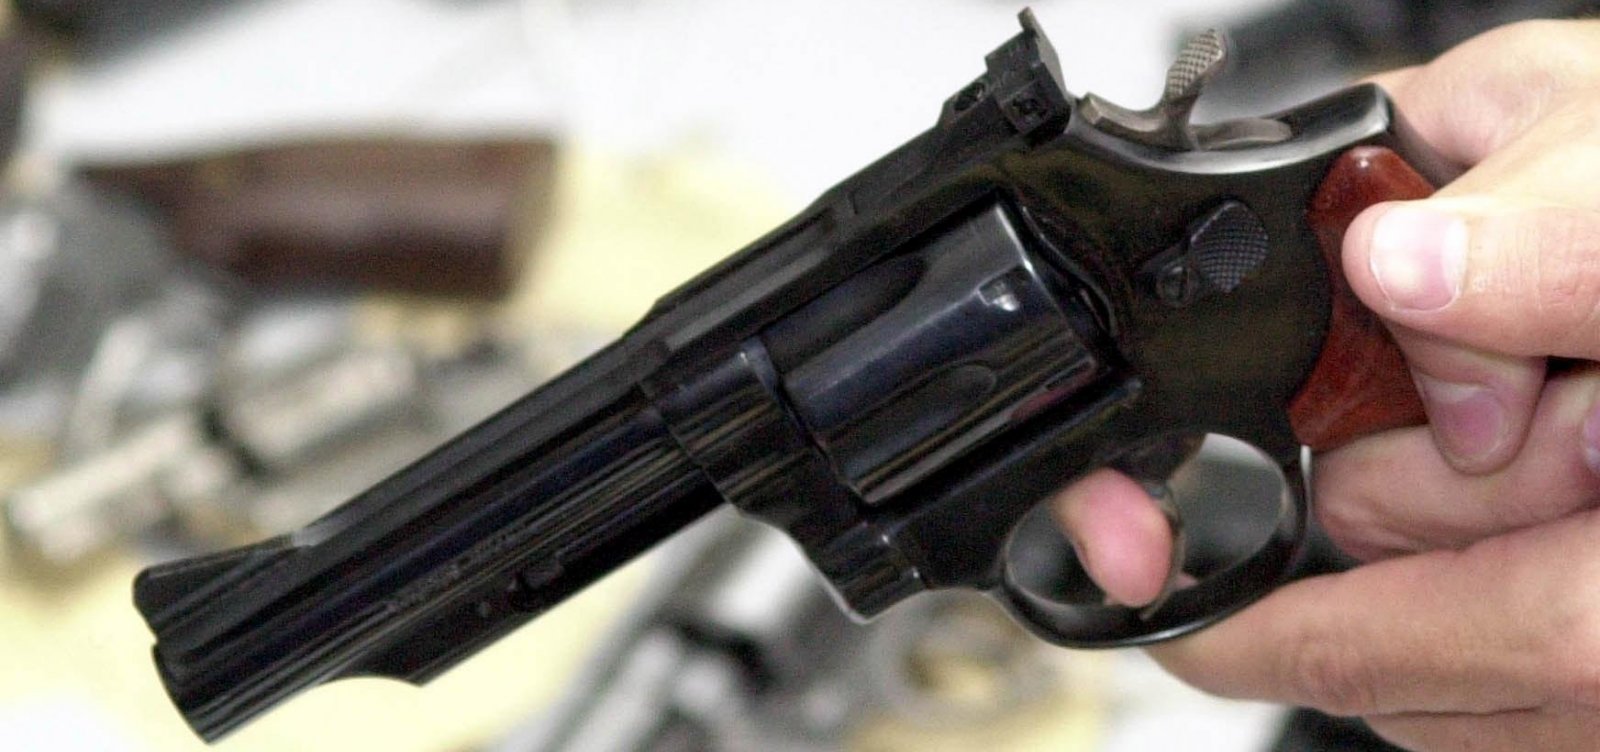 PC do B entra com ação no STF contra decreto sobre posse de armas